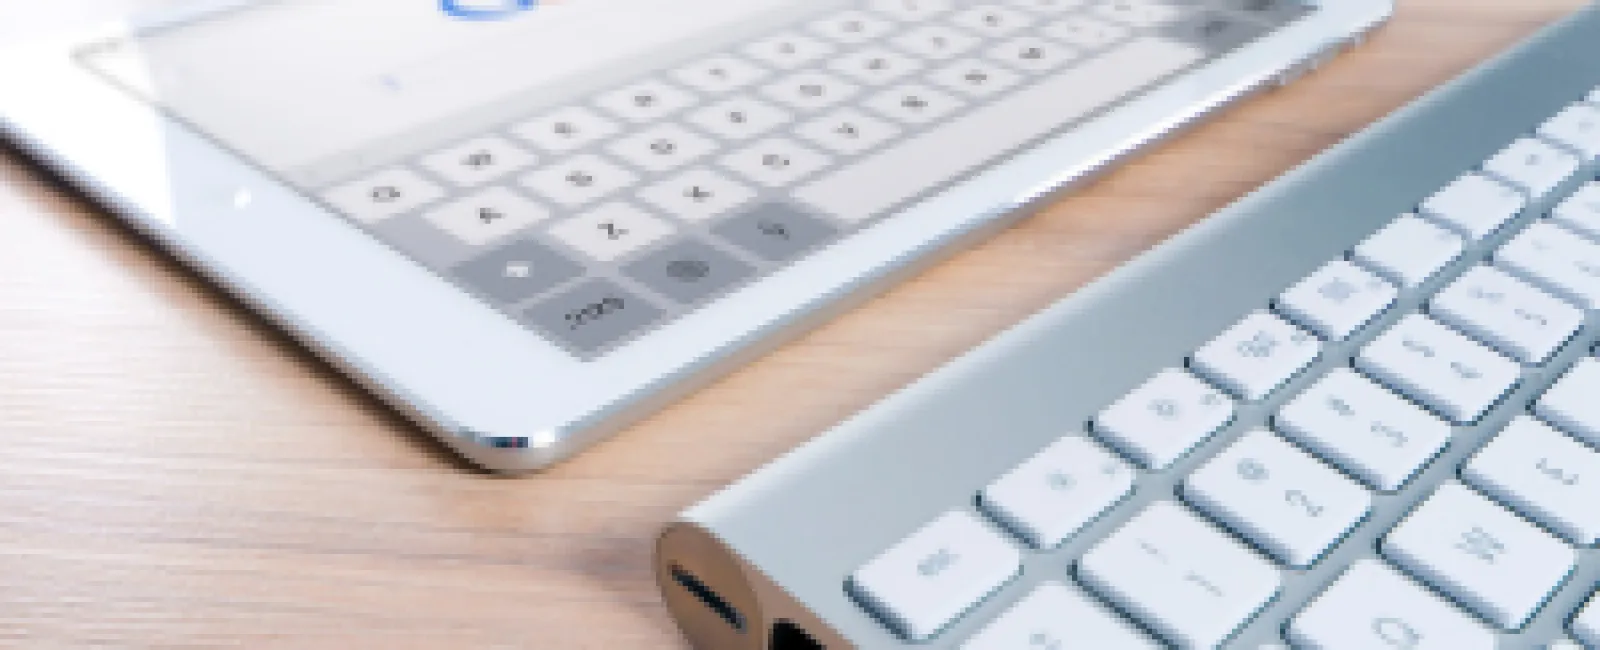 a white keyboard and a white keyboard